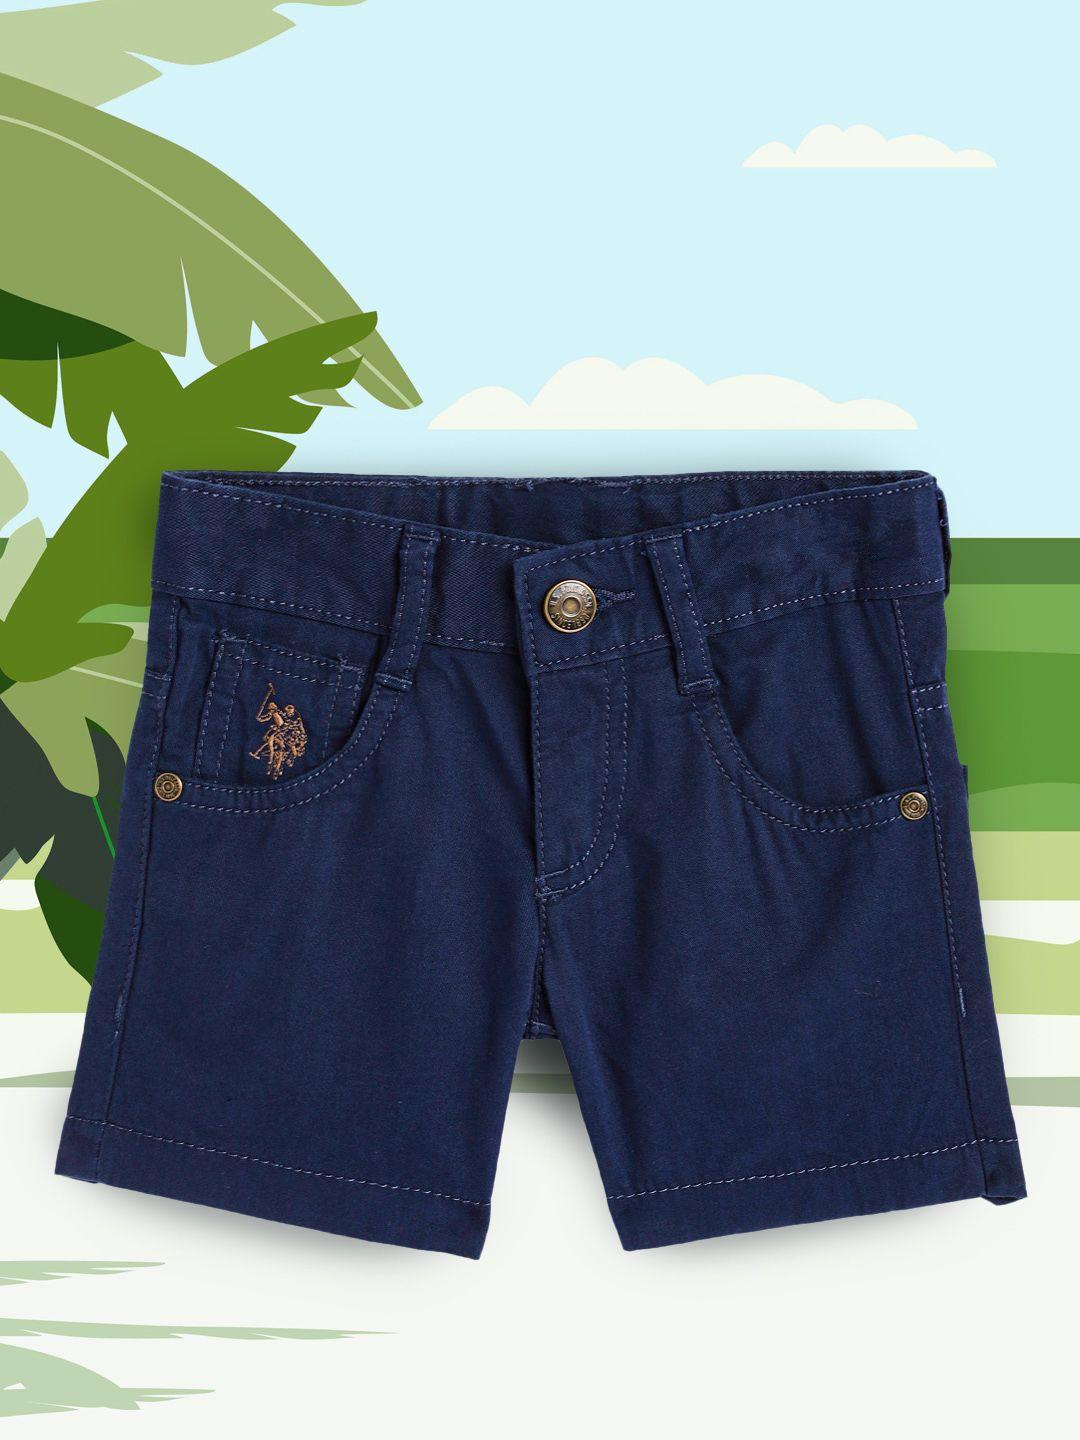 u.s. polo assn. kids boys navy blue pure cotton regular shorts